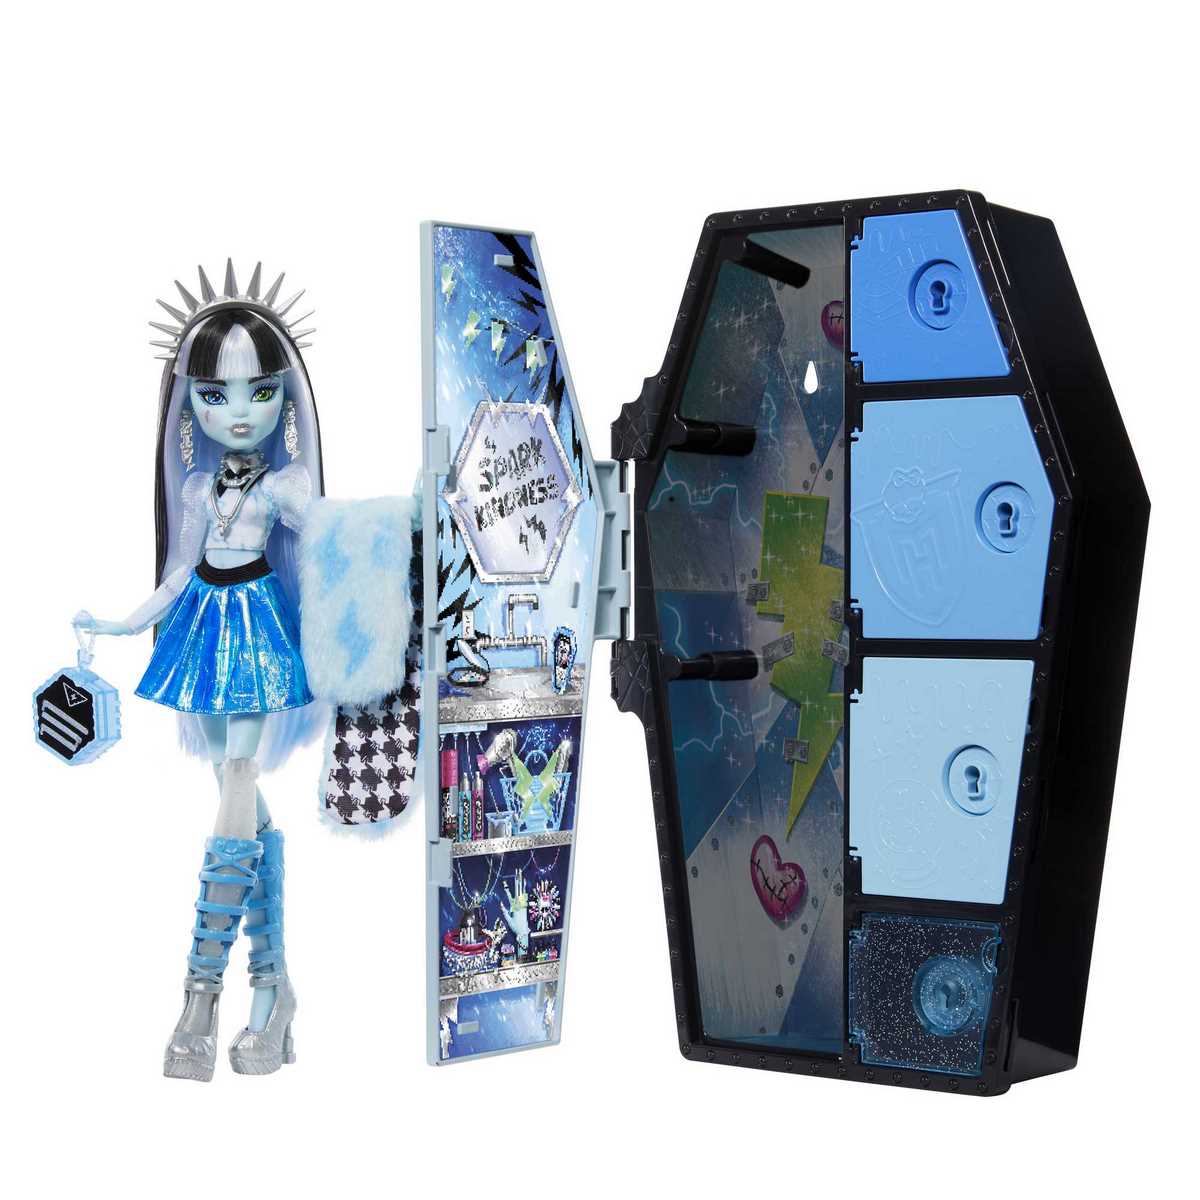 Promo Casiers secrets Monster High chez La Grande Récré